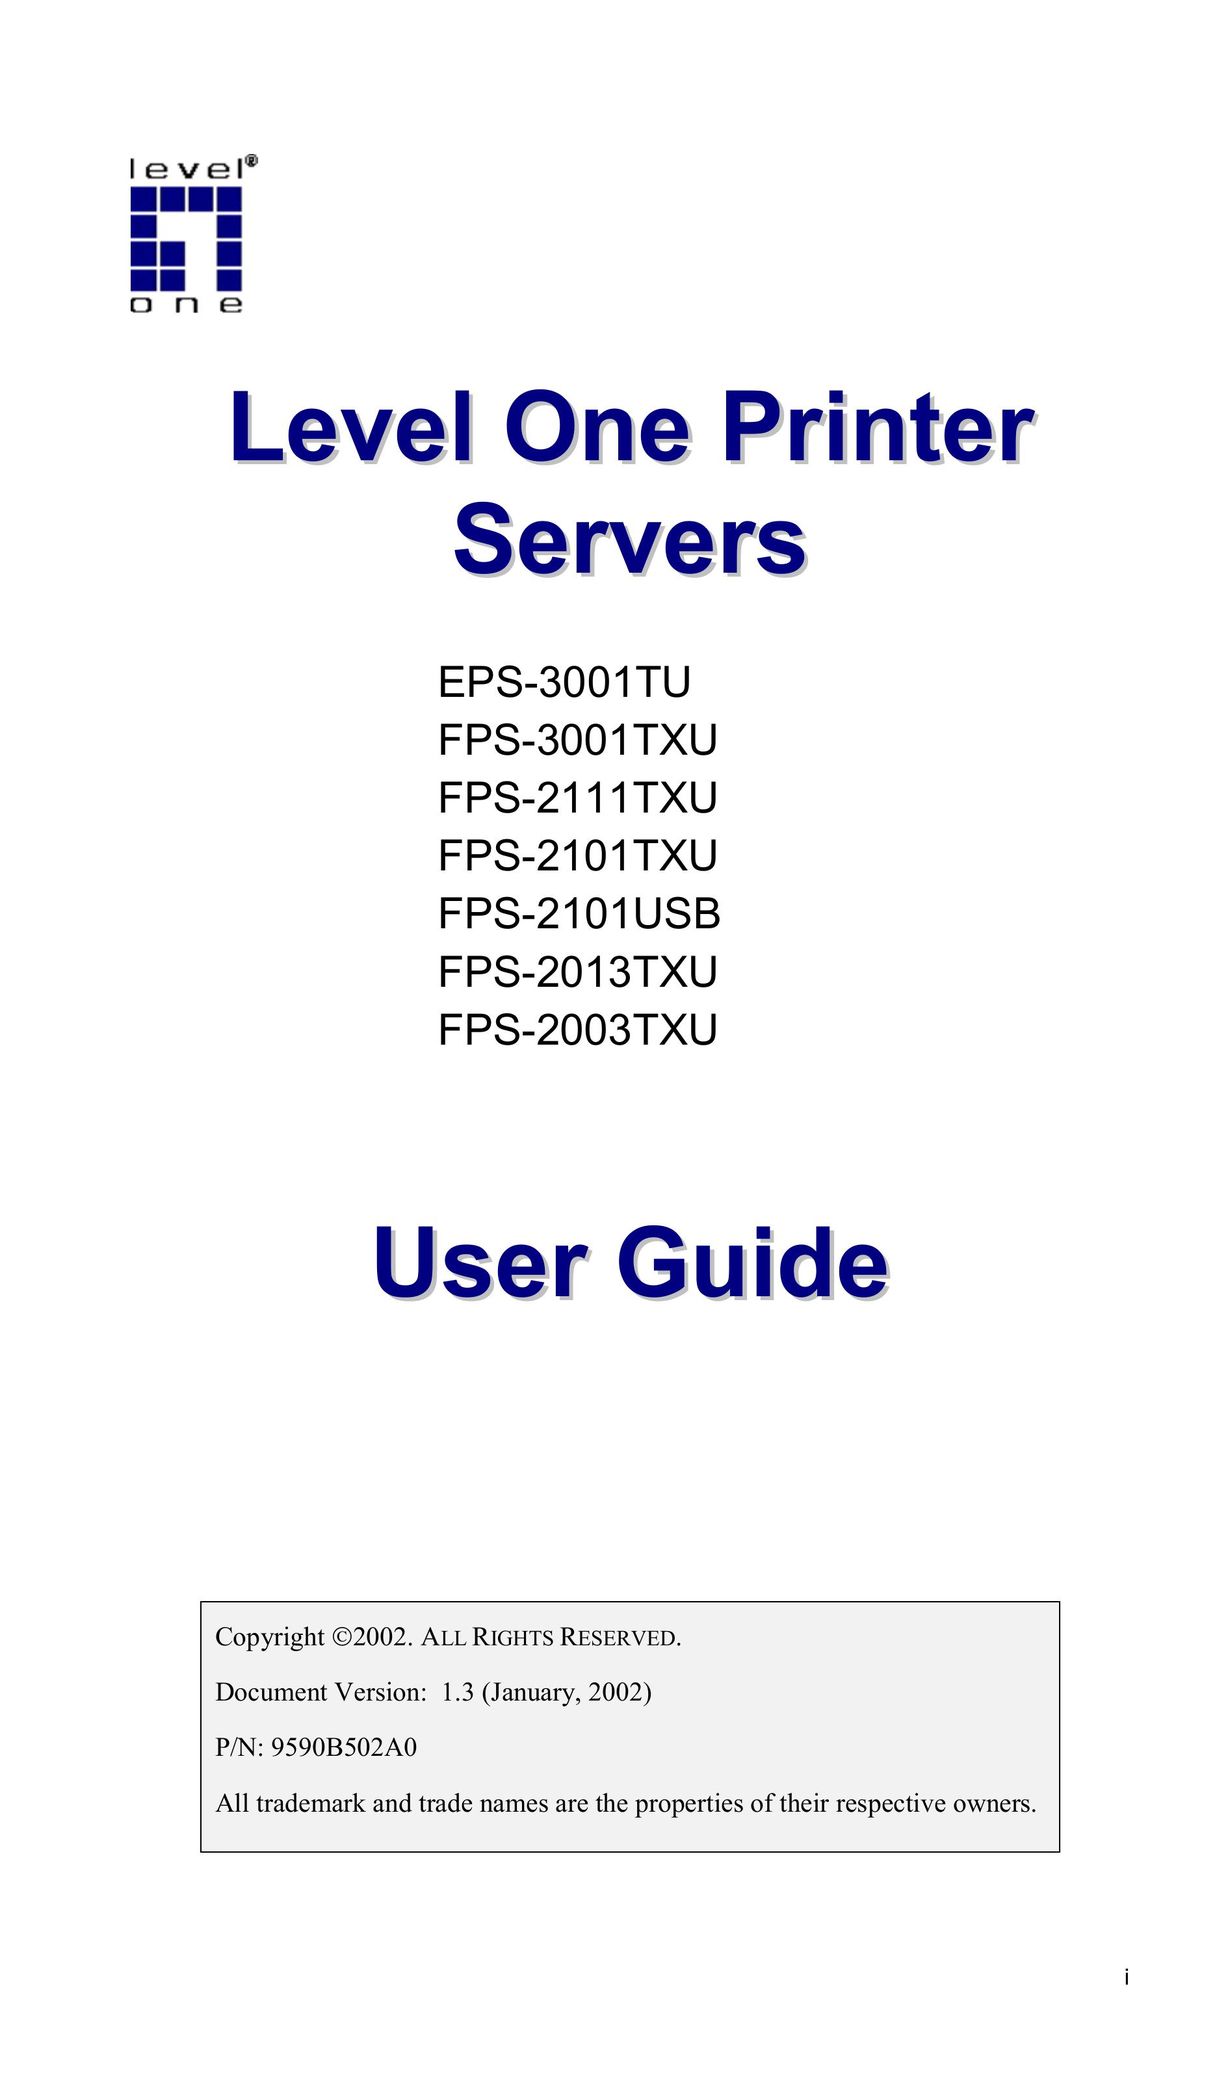 LevelOne FPS-3001TXU Printer User Manual